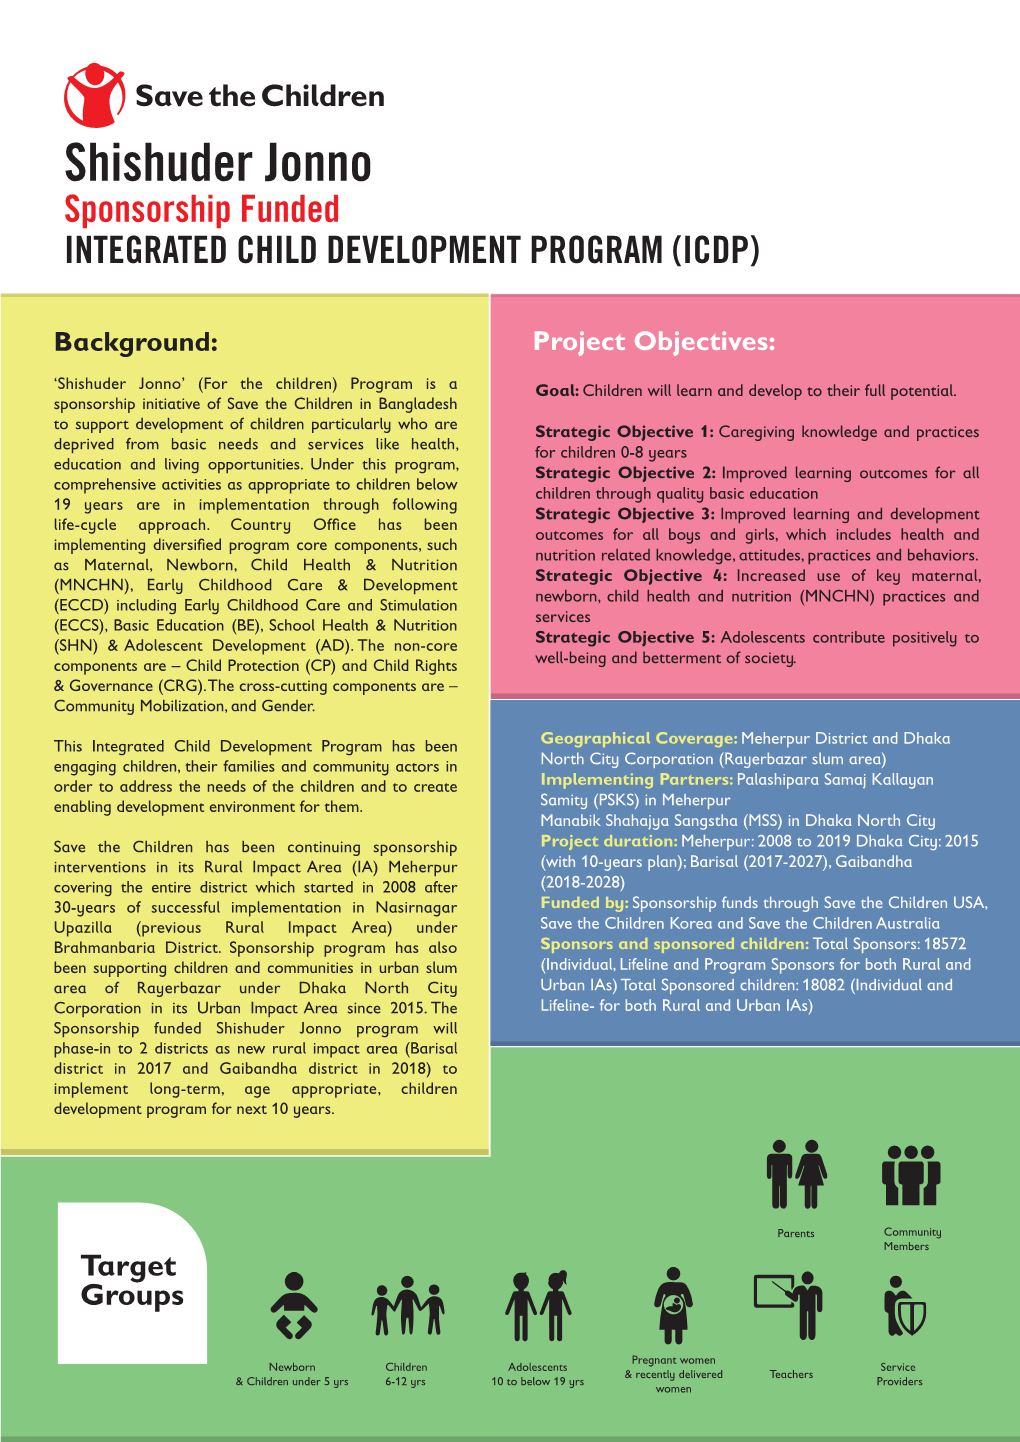 Shishuder Jonno Sponsorship Funded INTEGRATED CHILD DEVELOPMENT PROGRAM (ICDP)